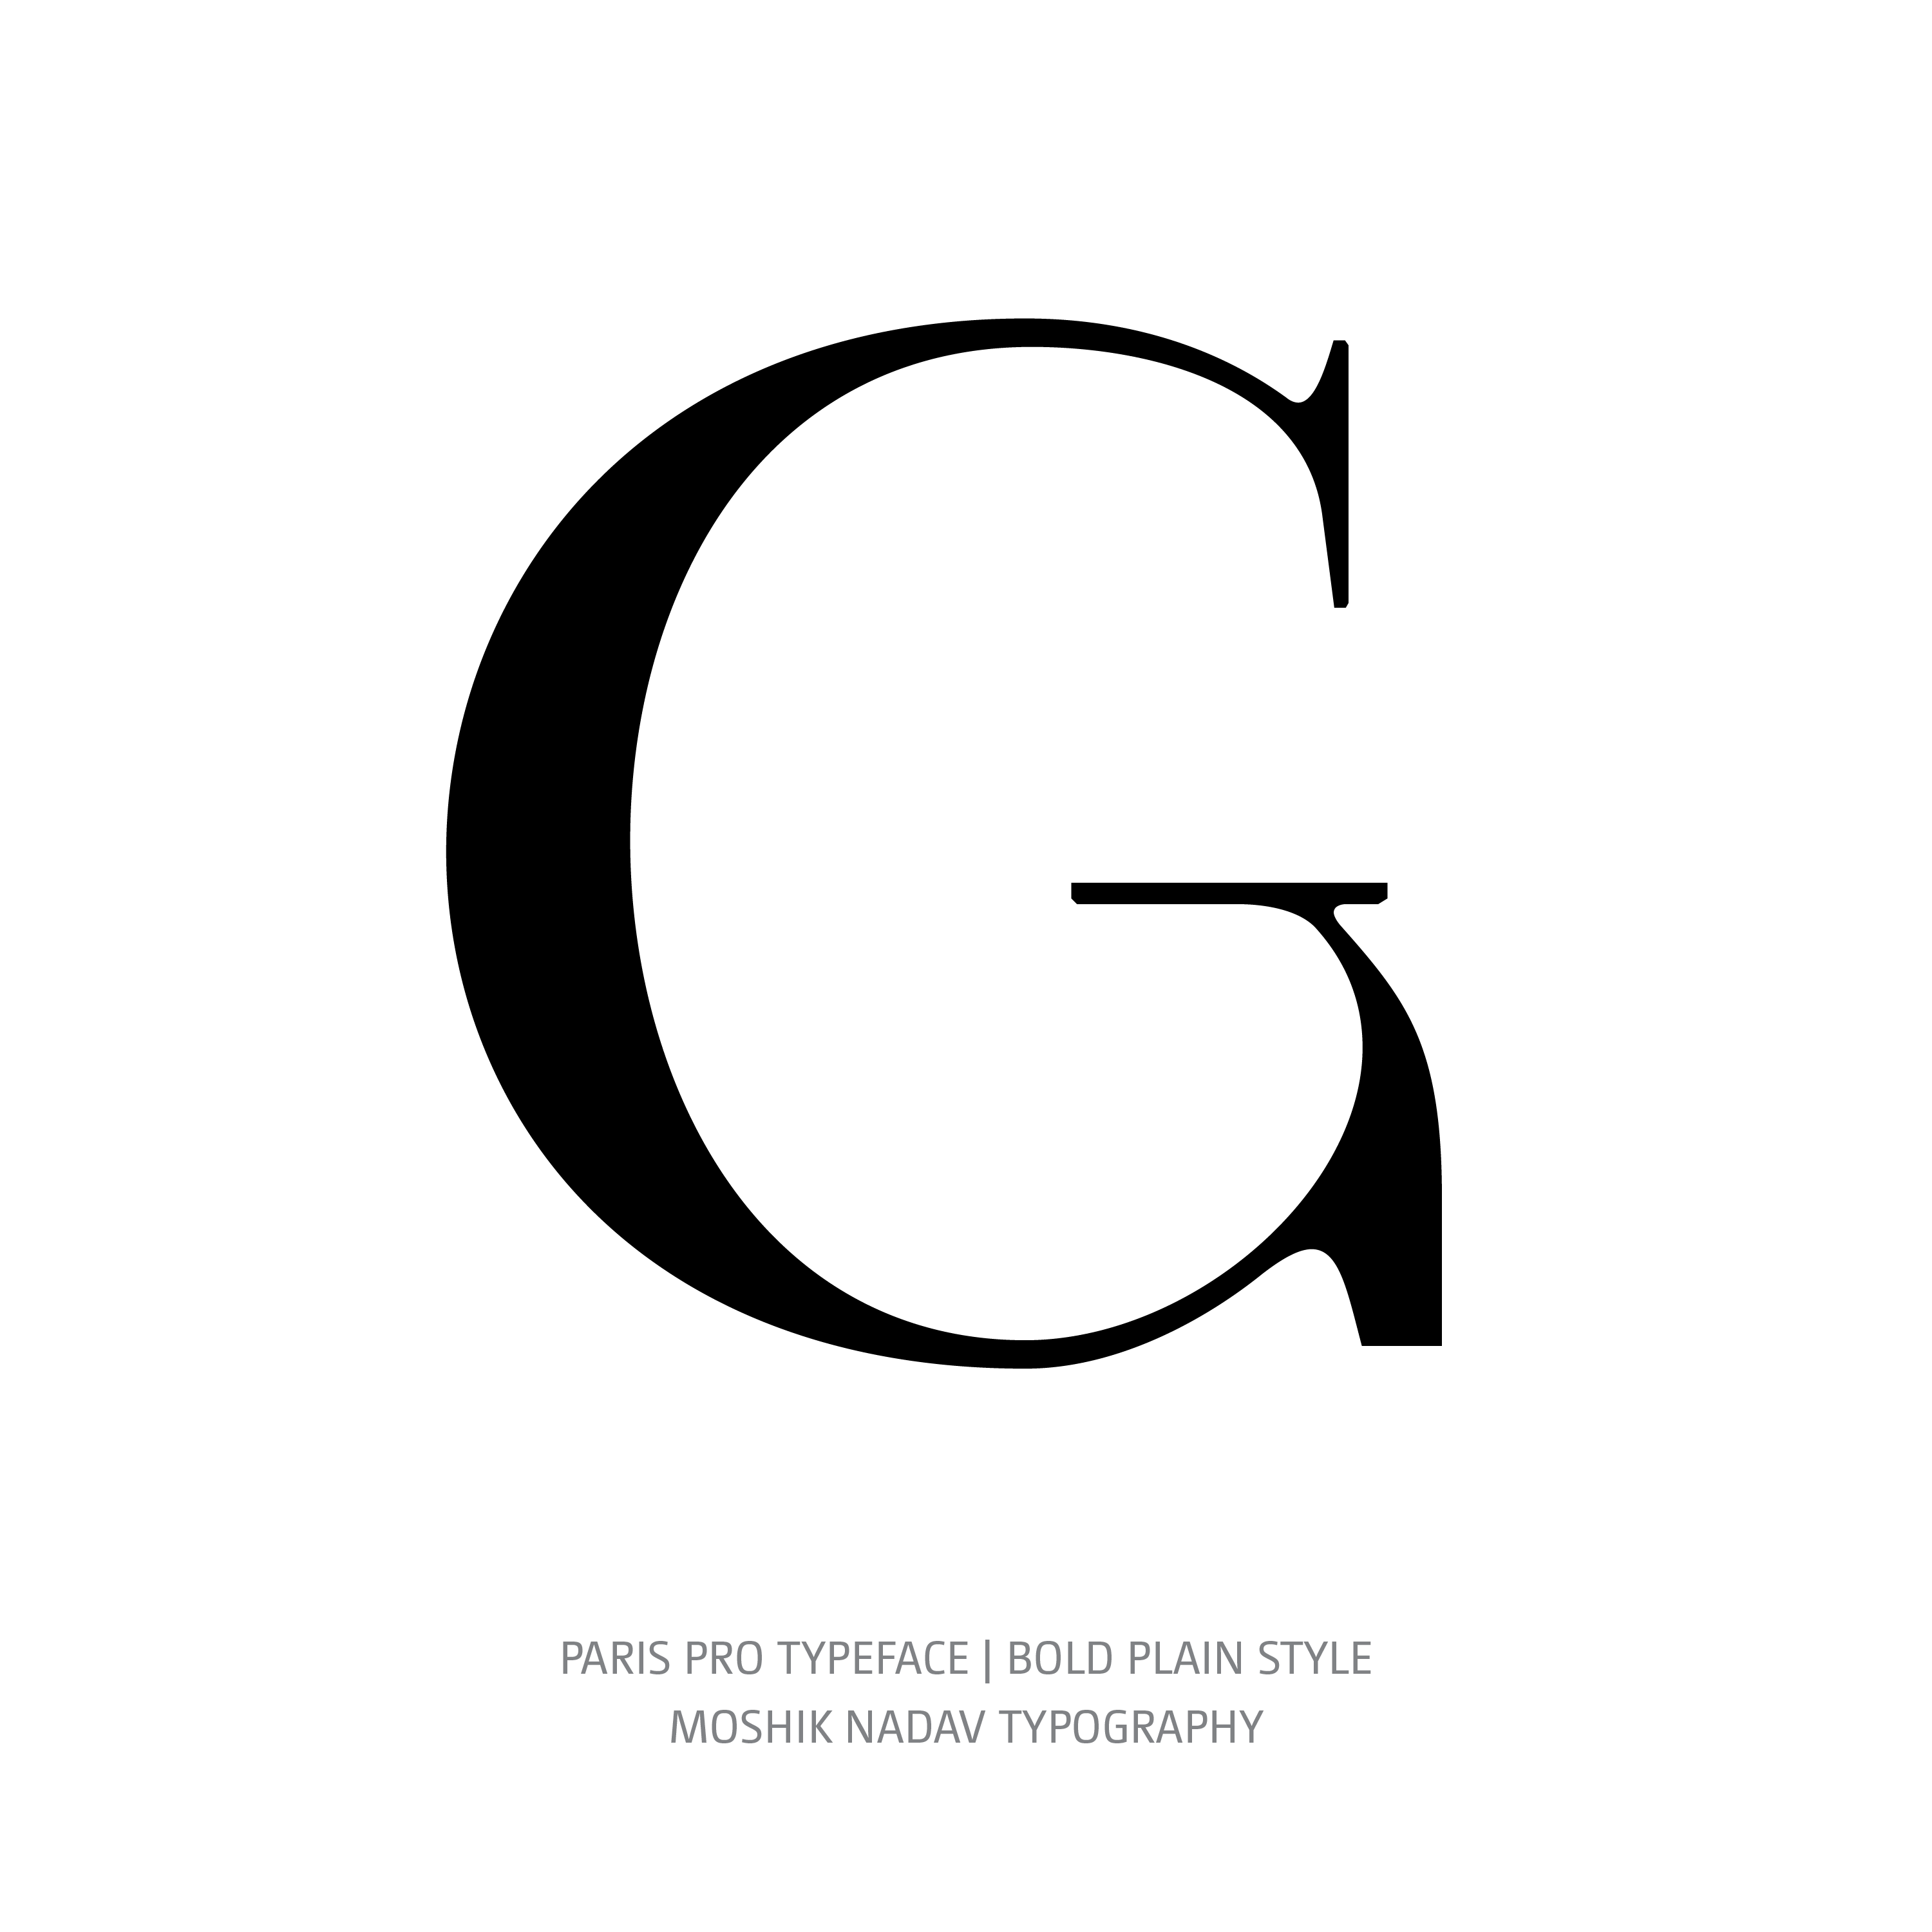 Paris Pro Typeface Bold Plain G